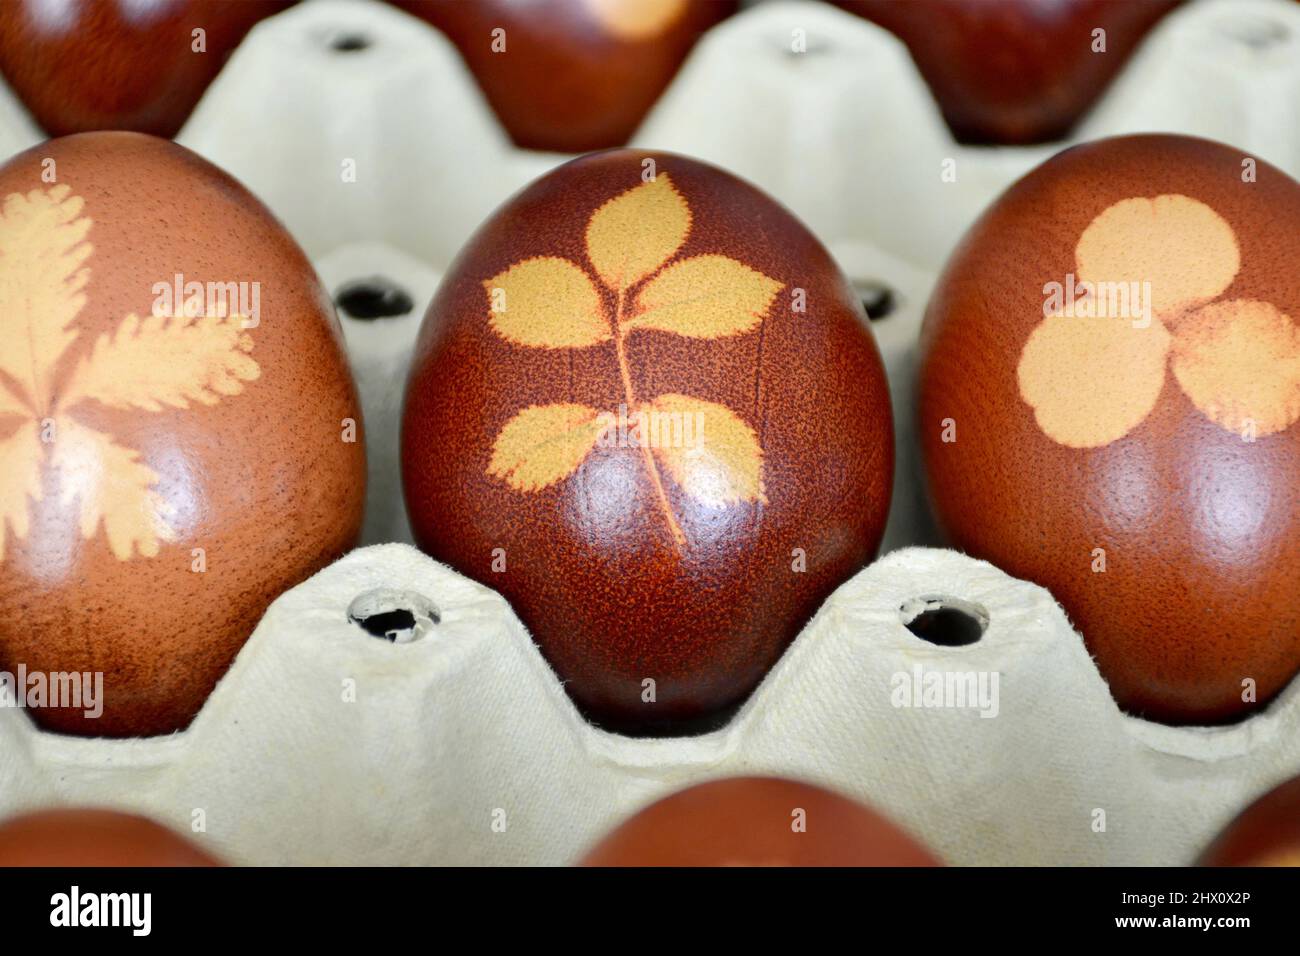 Gros plan des œufs de Pâques naturellement teints avec des peaux d'oignons Banque D'Images